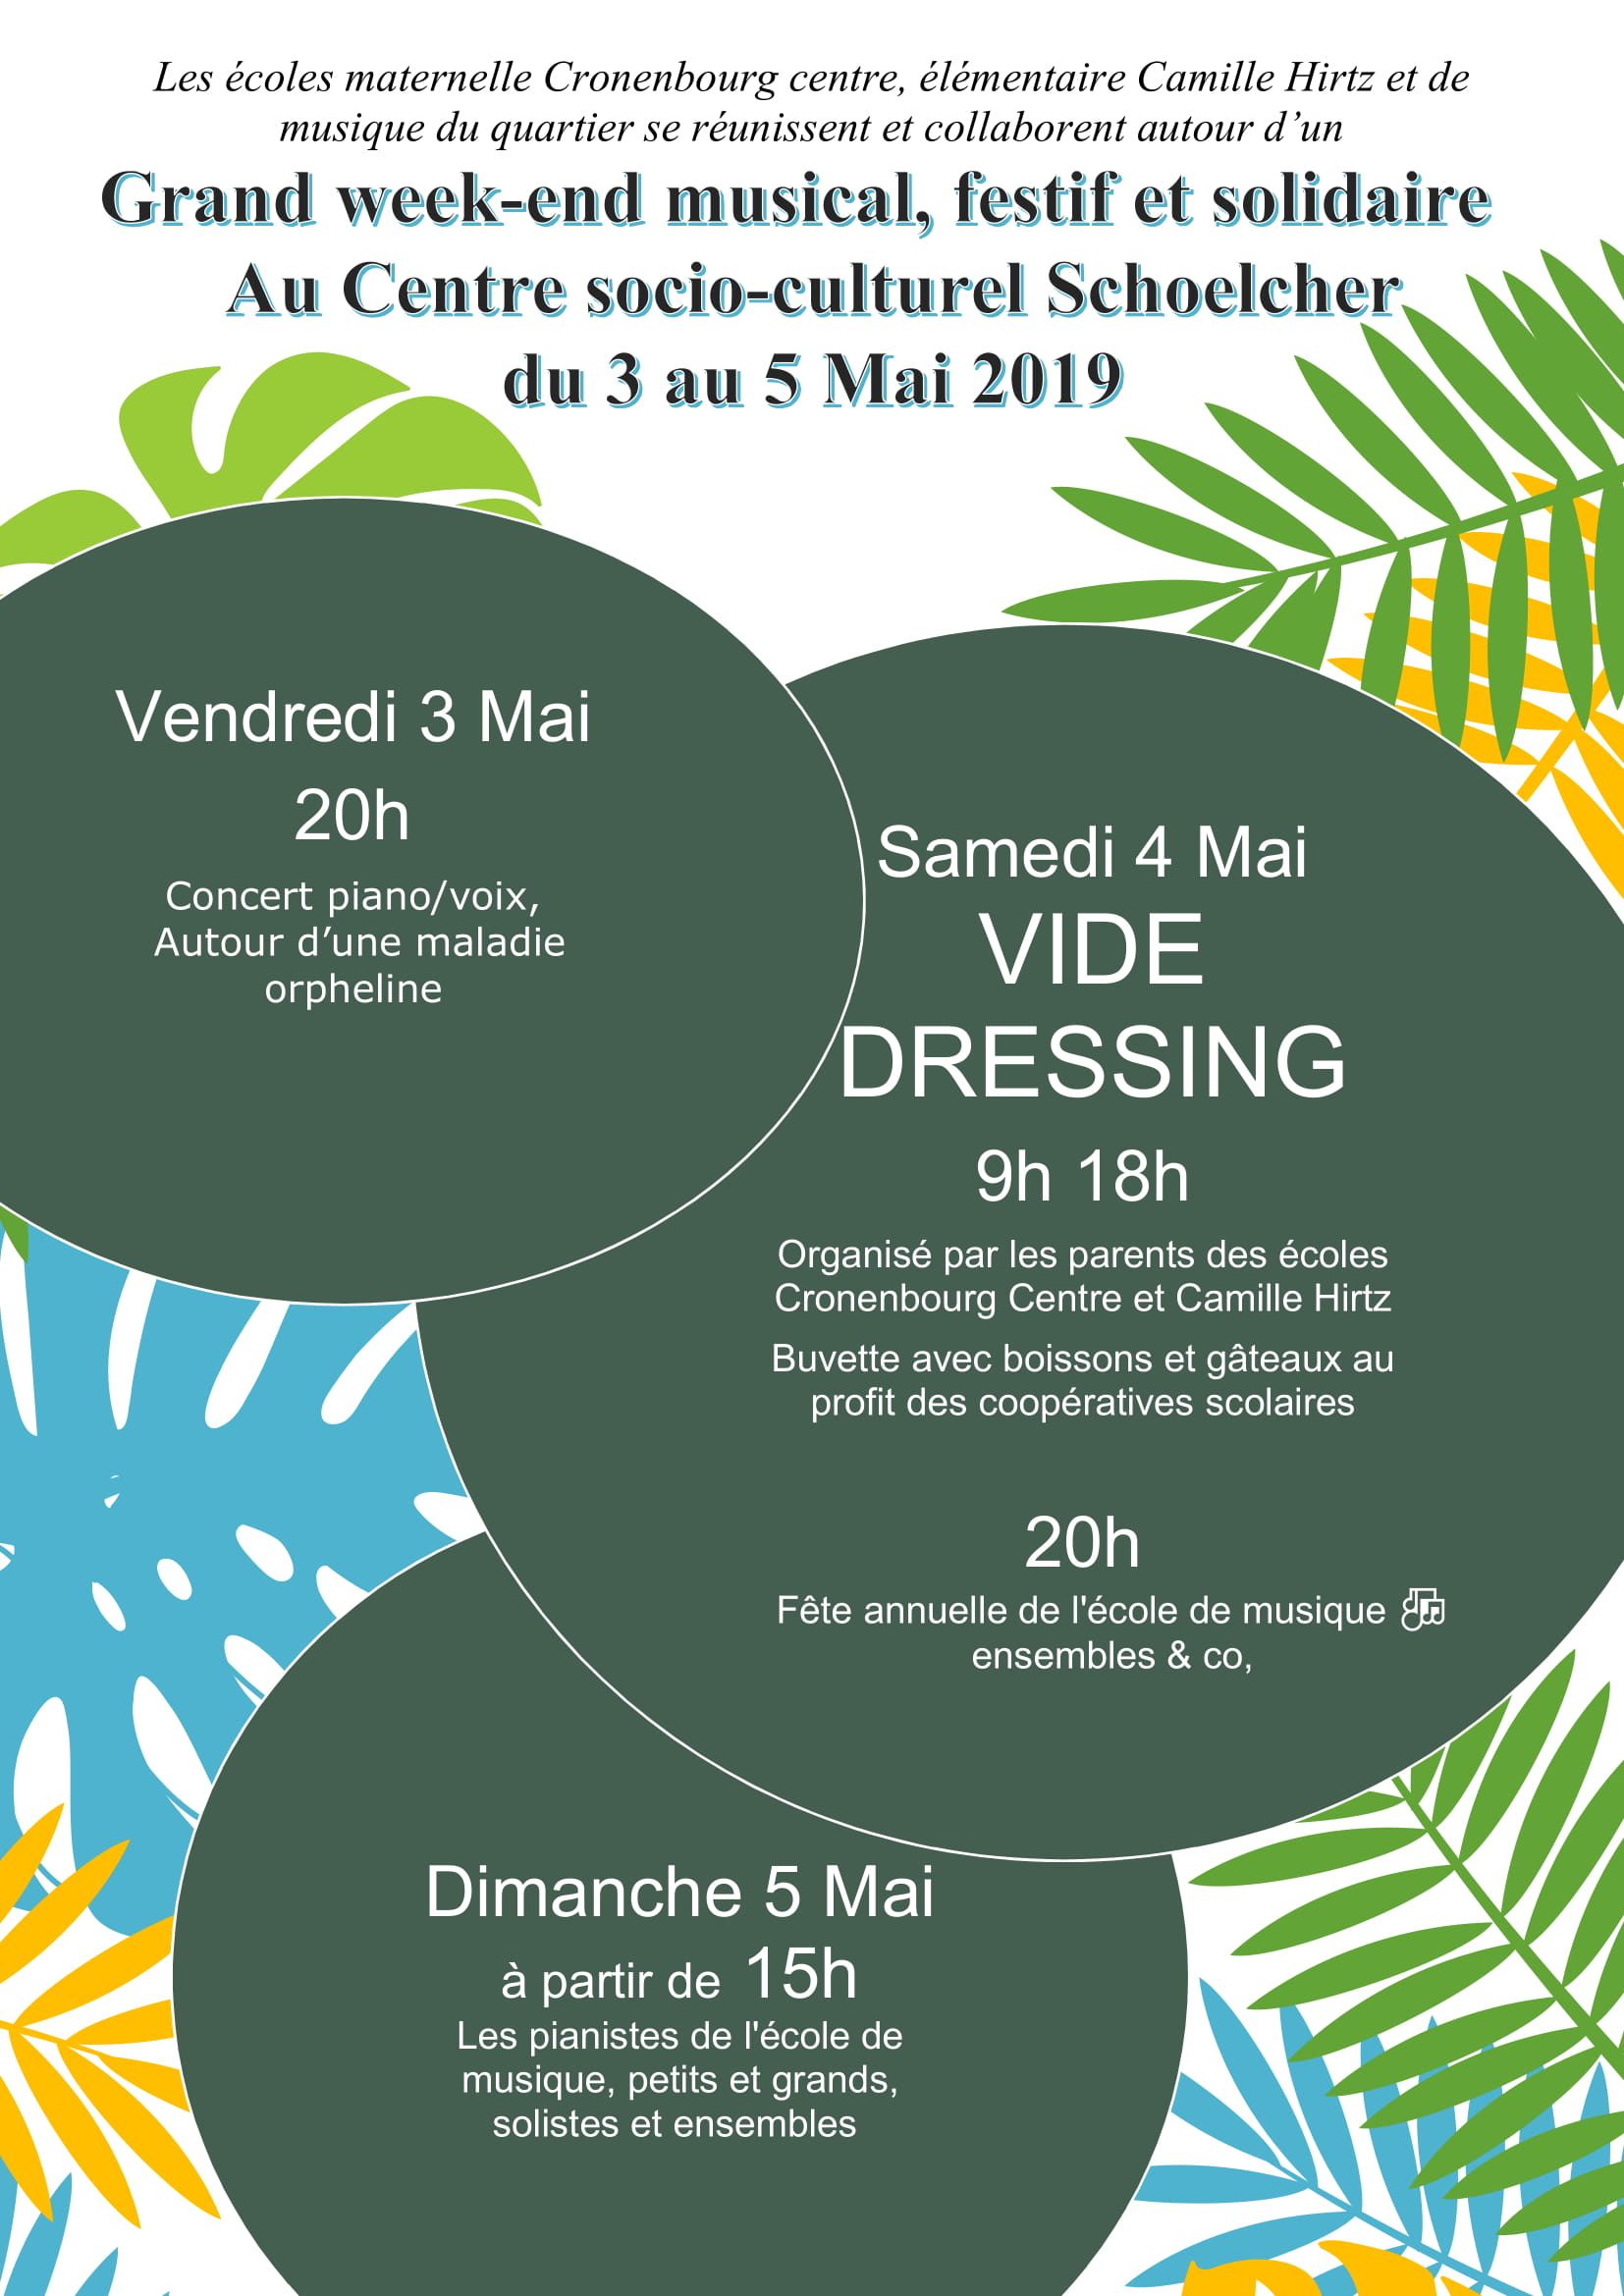 Grand week-end-musical, festif et solidaire au Centre socio-culturel Schoelcher du 3 au 5 mai 2019